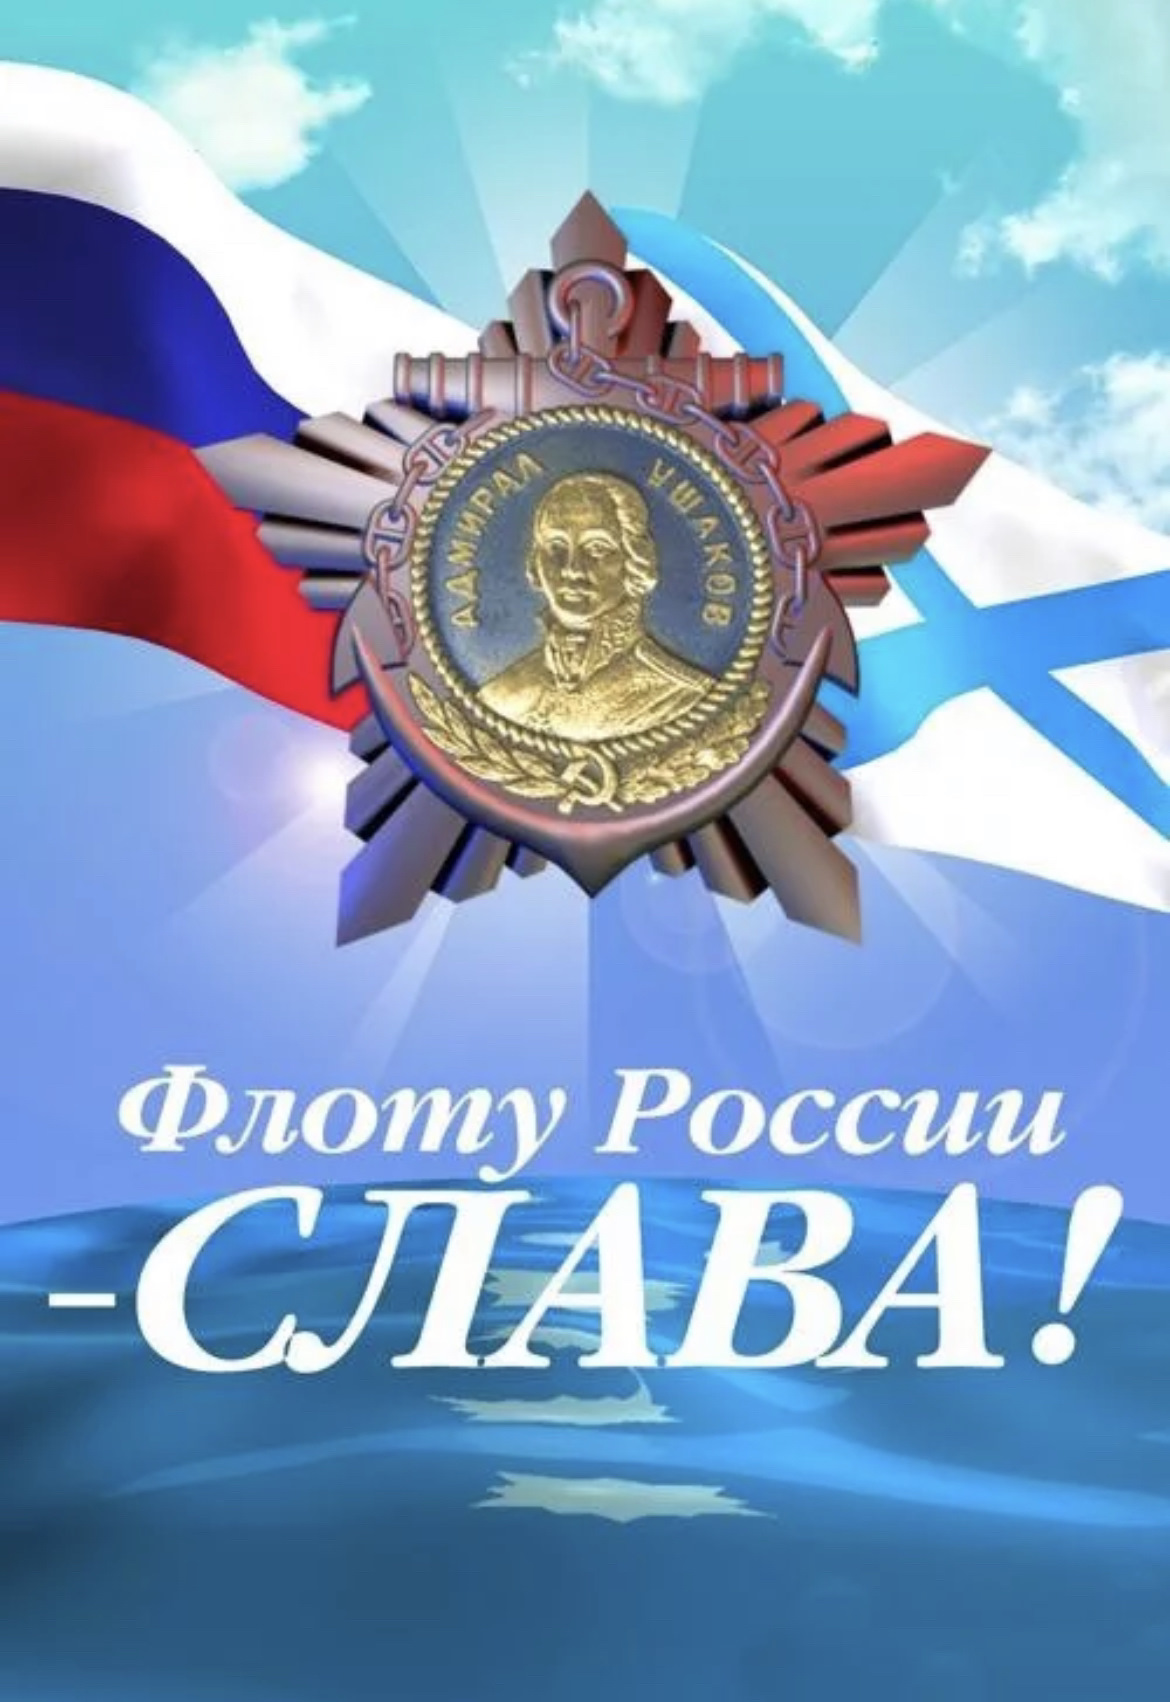 Во славу флота России